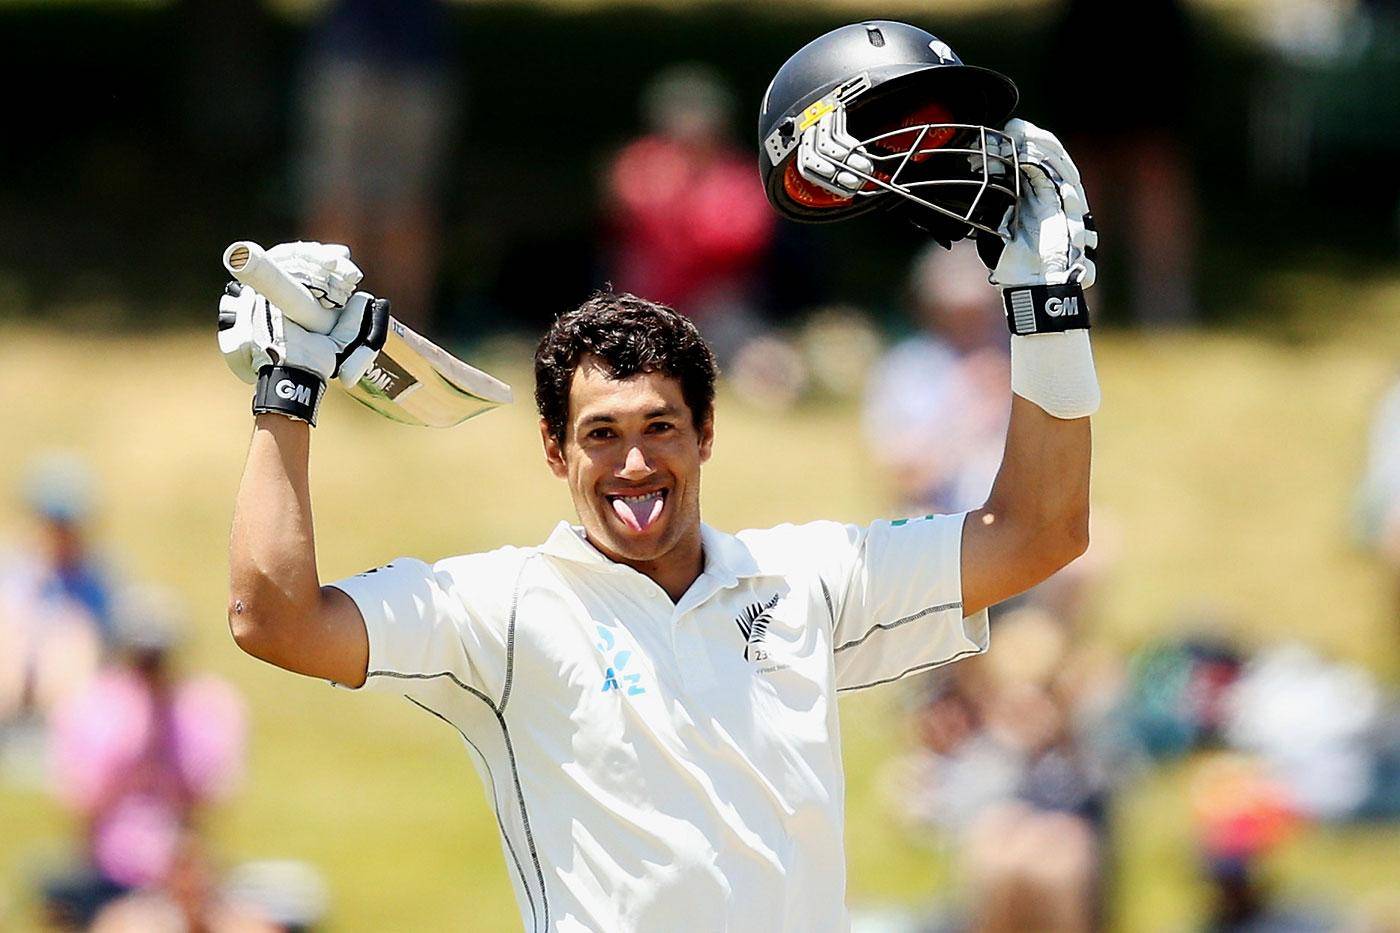 ENG दौरे से पहले NZ क्रिकेट टीम को लगा बड़ा झटका, ये खिलाड़ी हुआ चोटिल